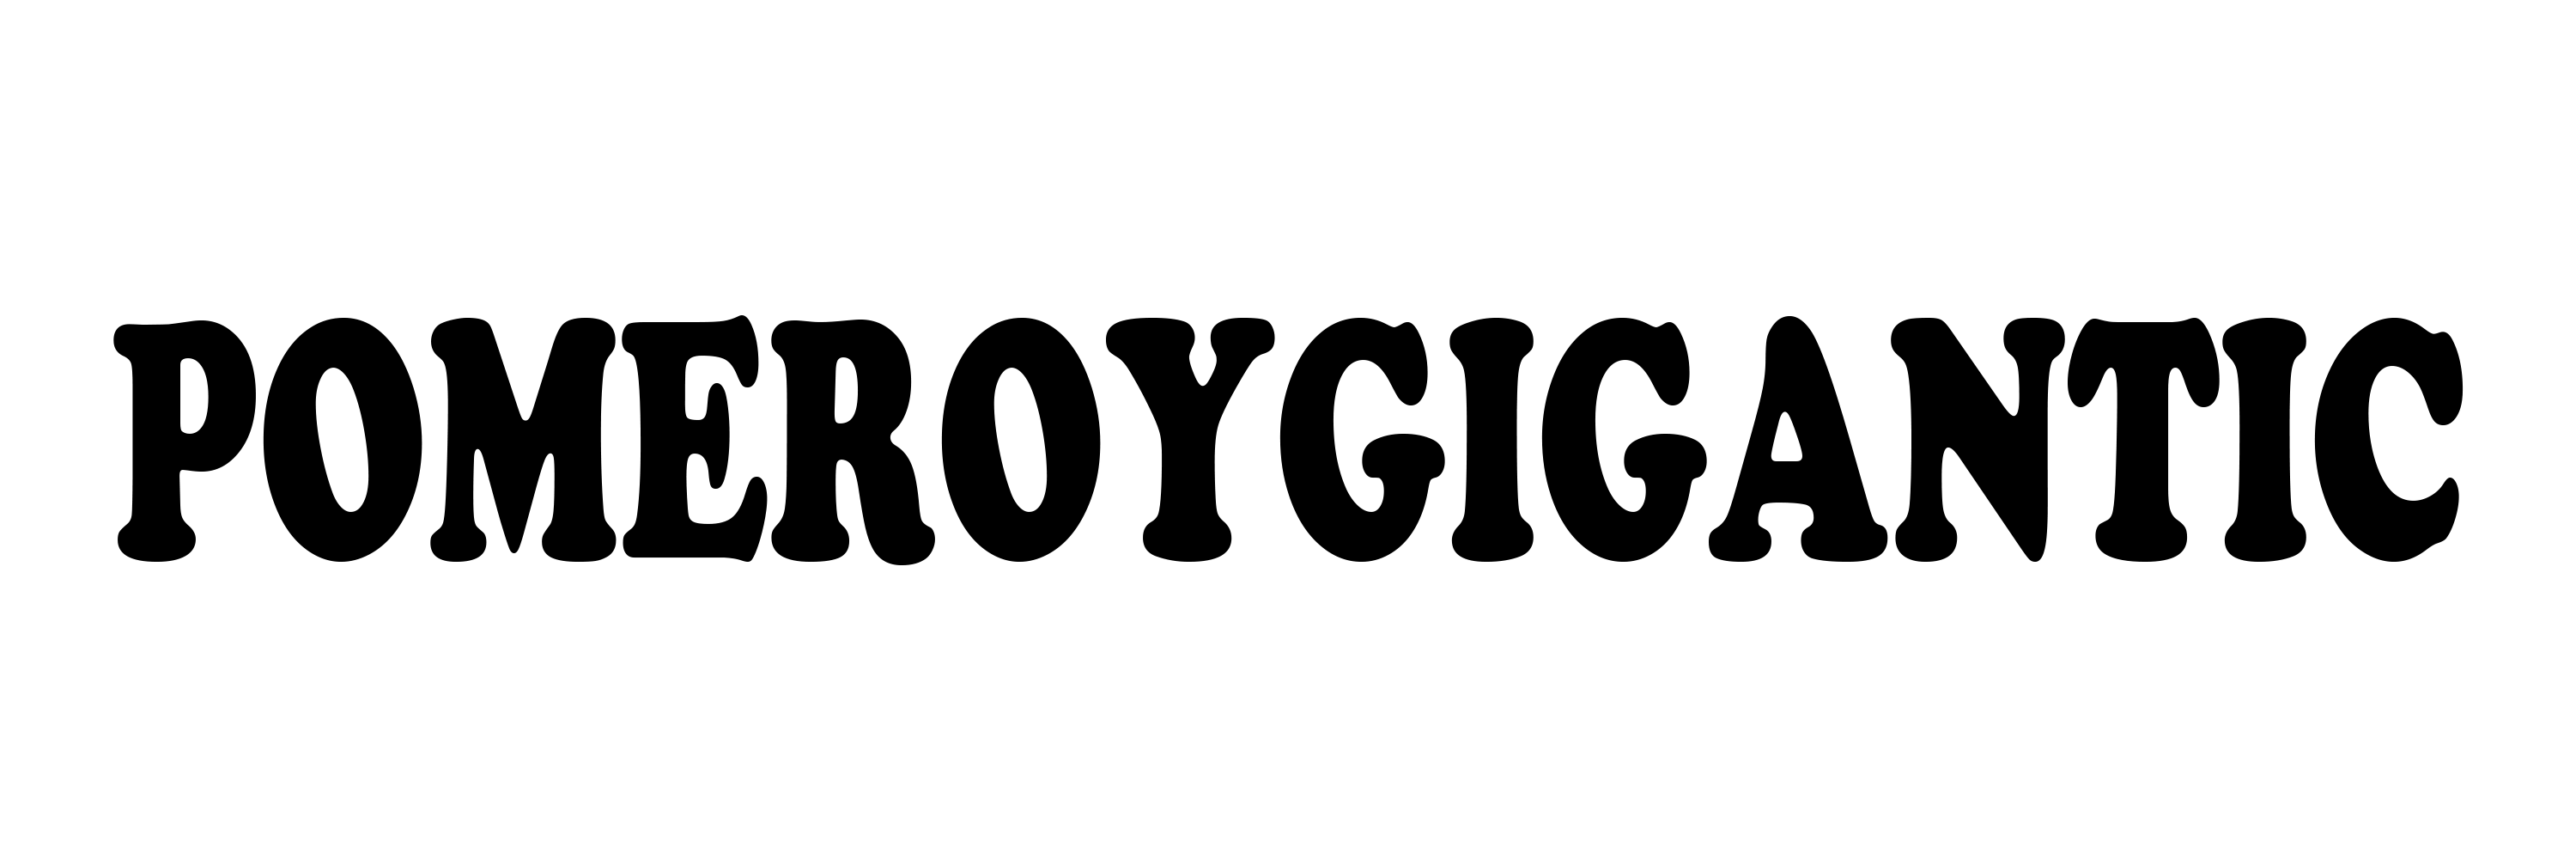 Jaunimo g. 1, Subačiškės, Logo